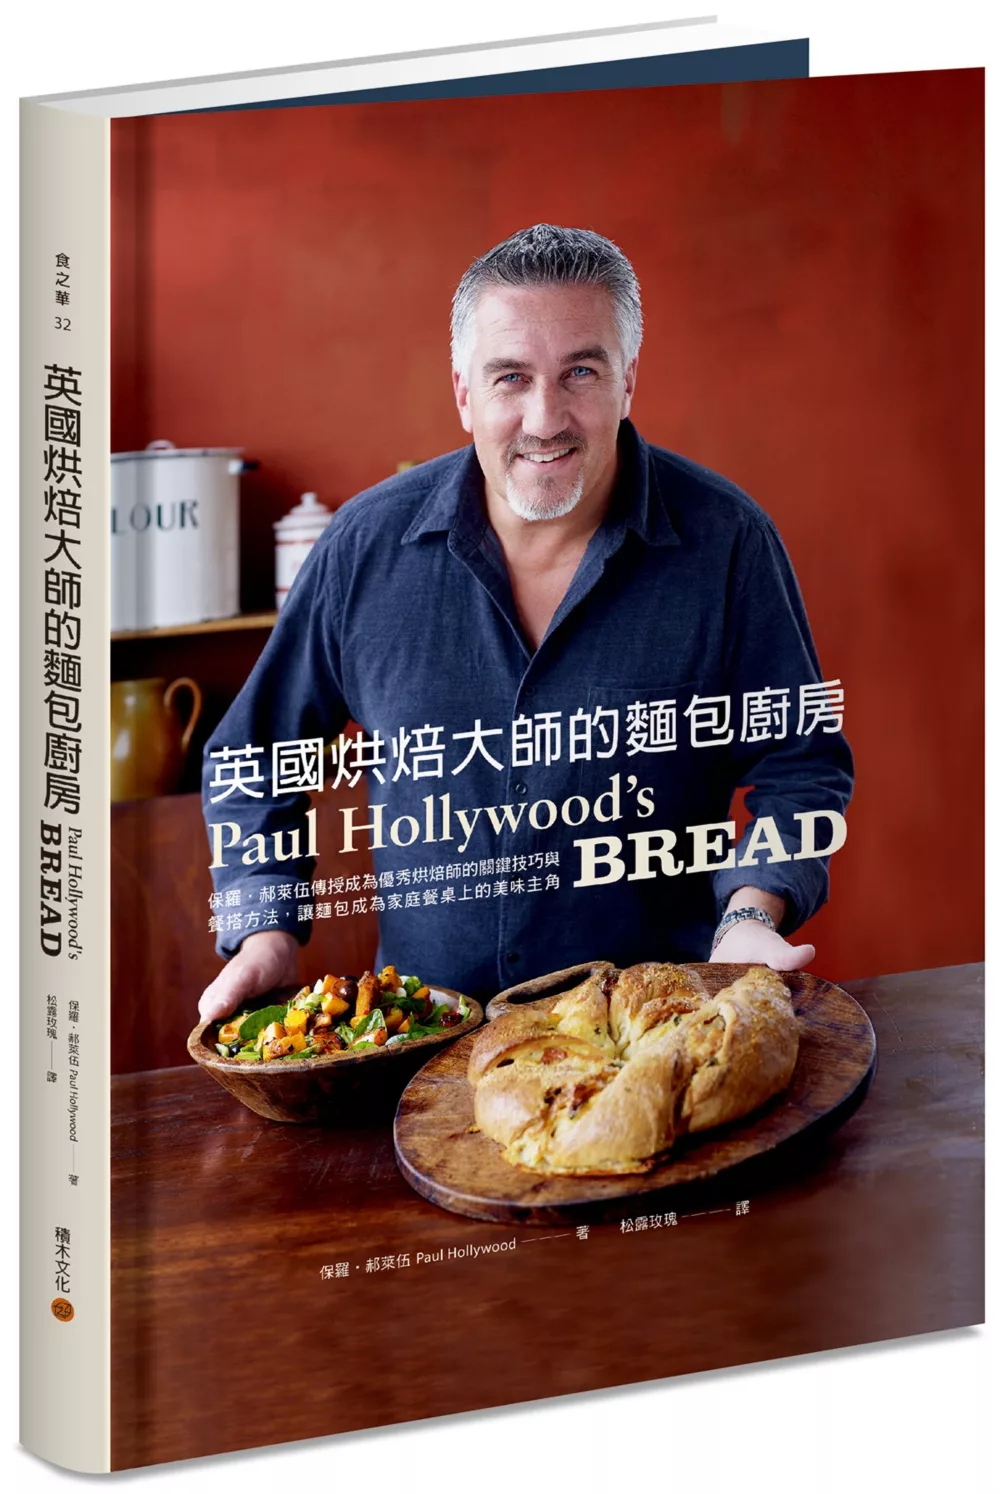 英國烘焙大師的麵包廚房：保羅．郝萊伍傳授成為優秀烘焙師的關鍵技巧與餐搭方法，讓麵包成為家庭餐桌上的美味主角